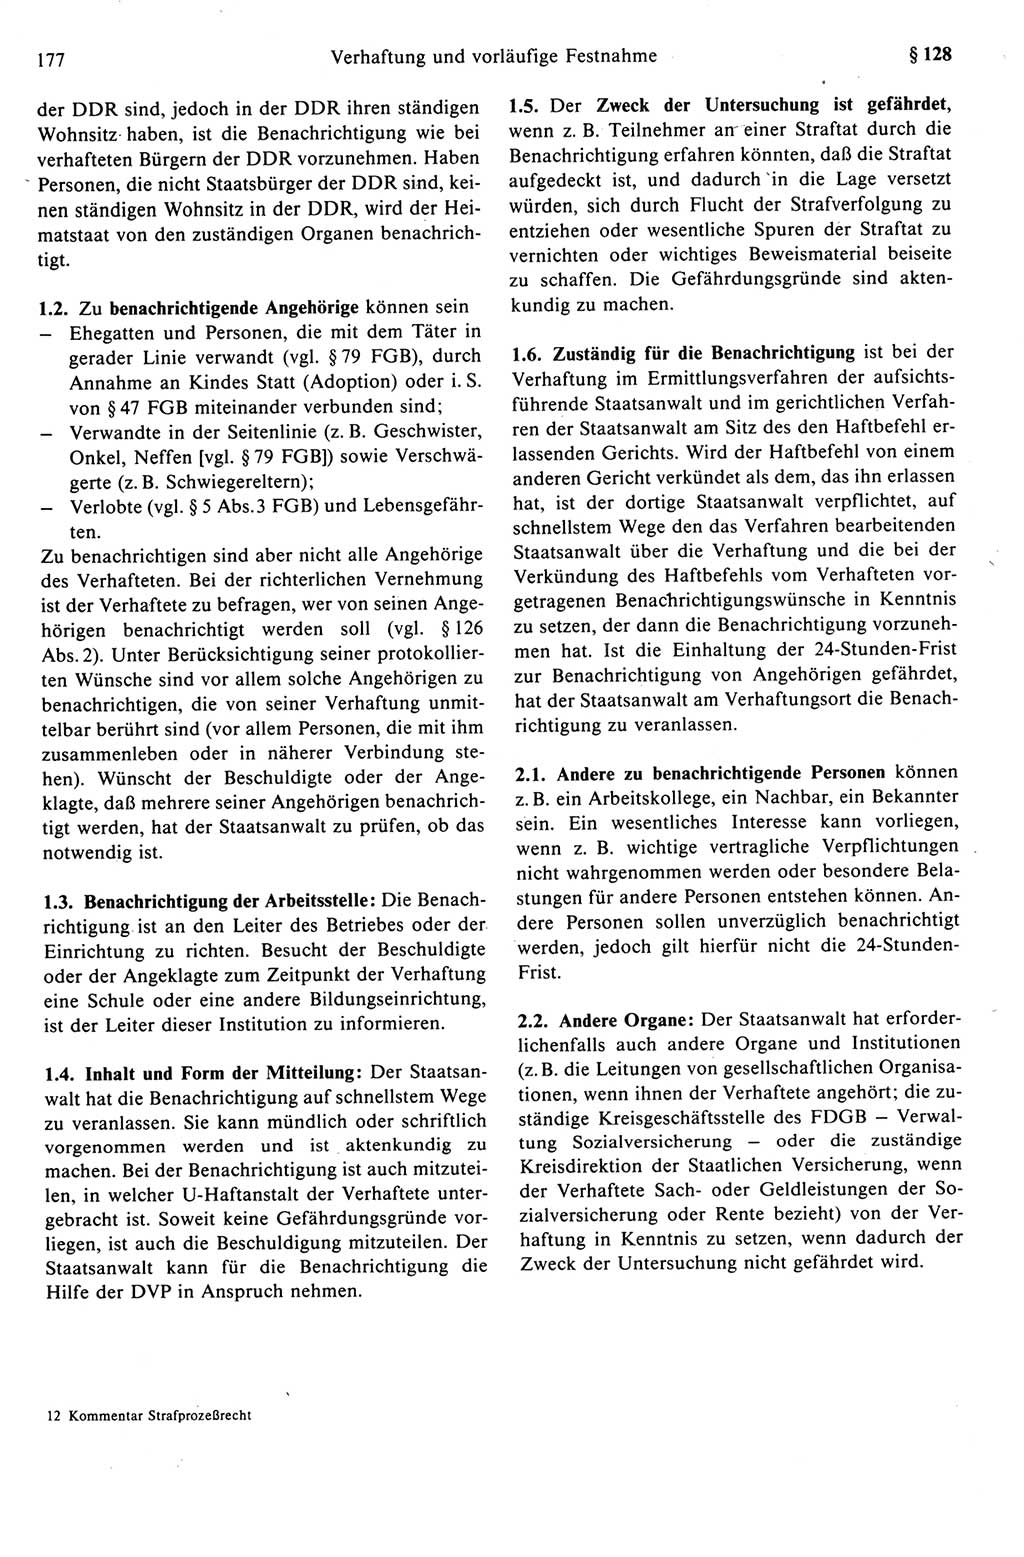 Strafprozeßrecht der DDR (Deutsche Demokratische Republik), Kommentar zur Strafprozeßordnung (StPO) 1989, Seite 177 (Strafprozeßr. DDR Komm. StPO 1989, S. 177)